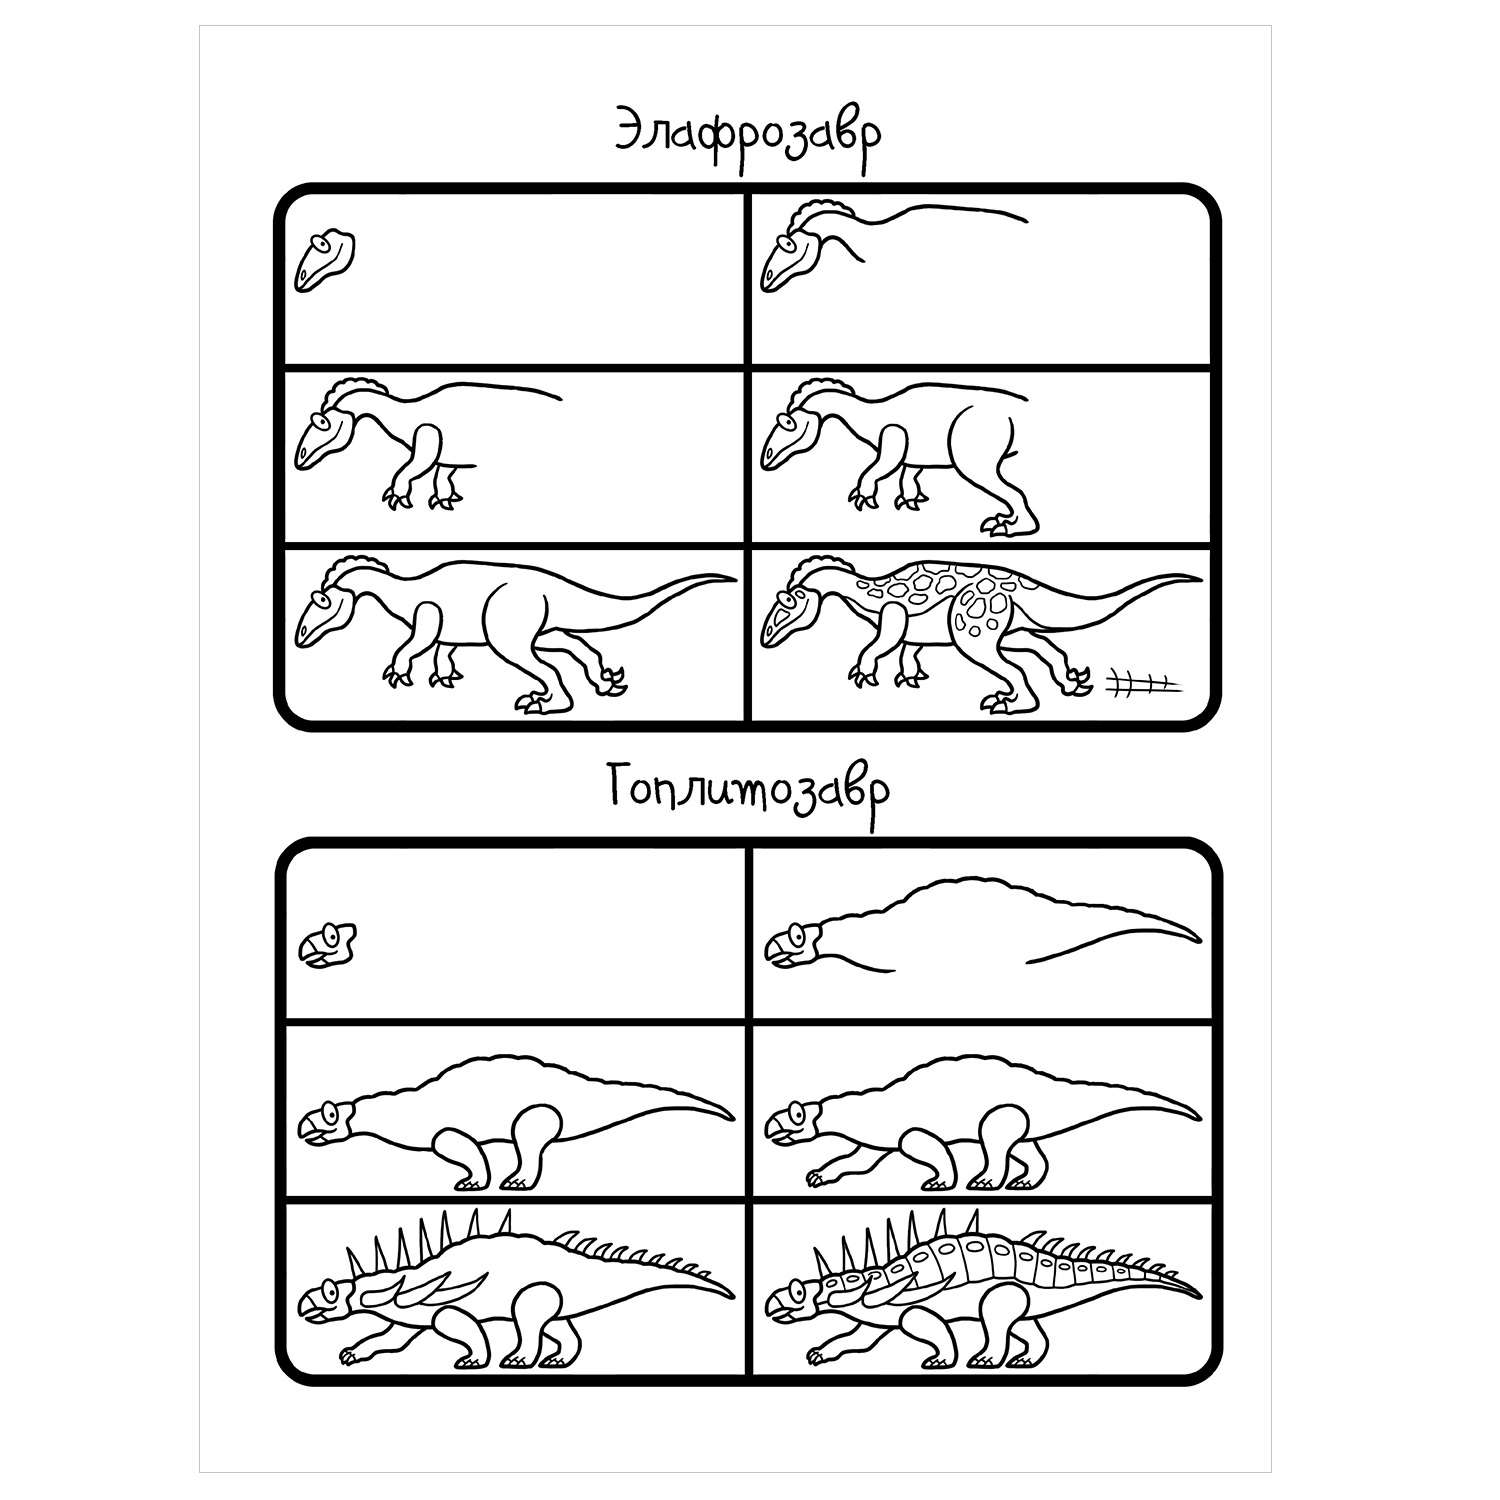 Книга АСТ Как научиться рисовать 101 динозавра - фото 6